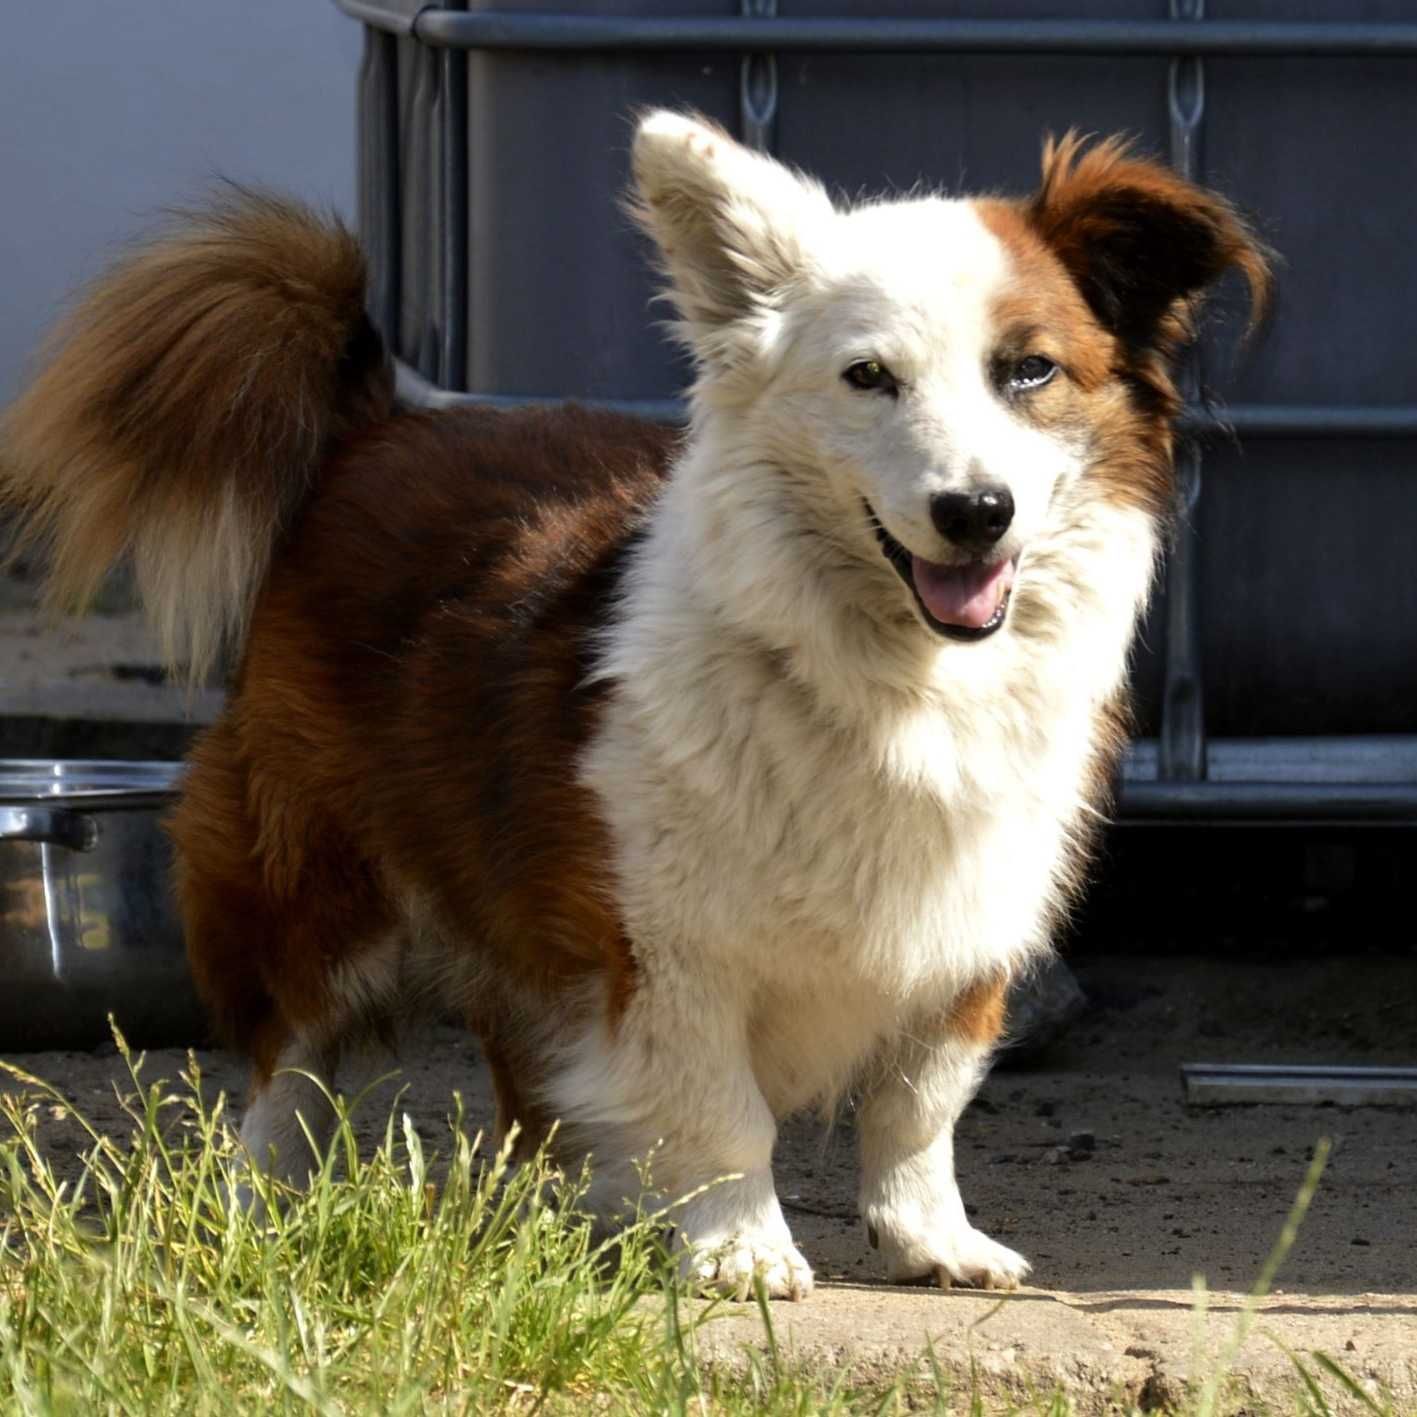 Flapi - starszy pies w typie Corgi szuka domu